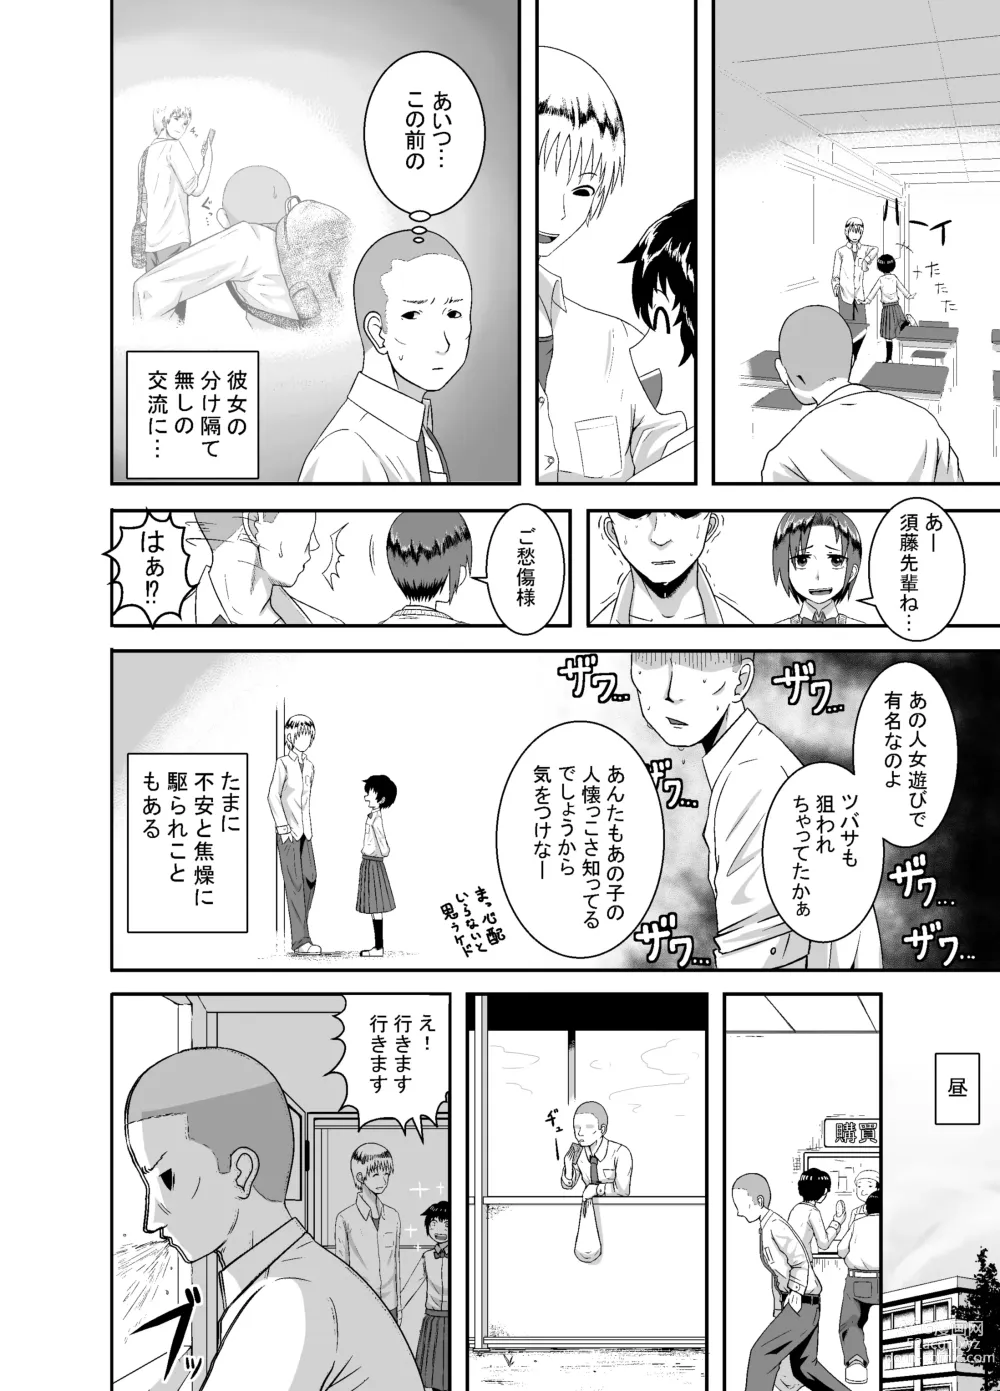 Page 11 of doujinshi Kimi ga Yarareru Kurai nara ~Genkikko Crisis~